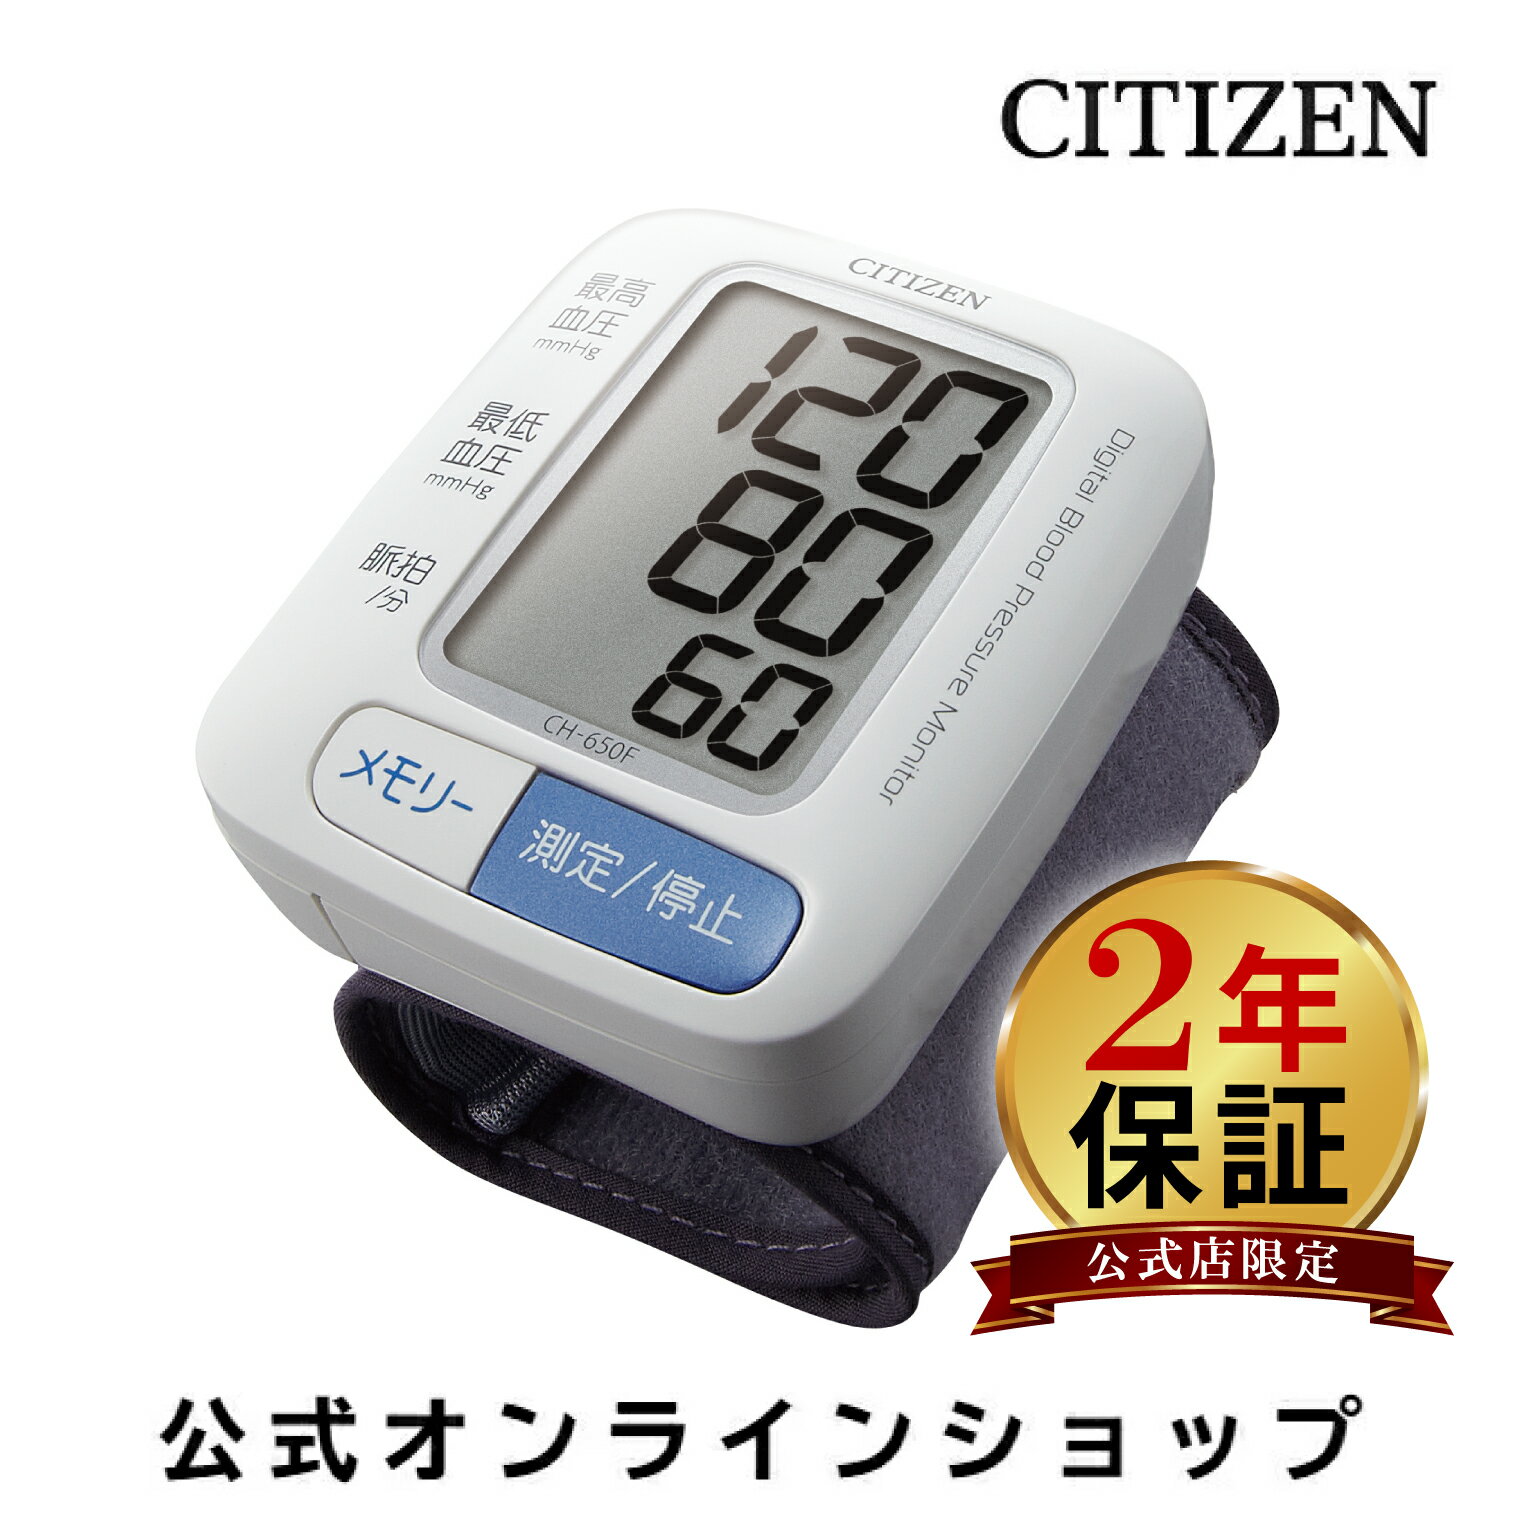 【2年保証】 シチズン 血圧計 ch 650f CITIZEN CH650F 手首式 携帯用 60回 メモリー 手首式血圧計 カフ ハードカフ 血圧 計 小さい 簡単 正確 手首 携帯 履歴 家庭用 持ち運び コンパクト 血圧…